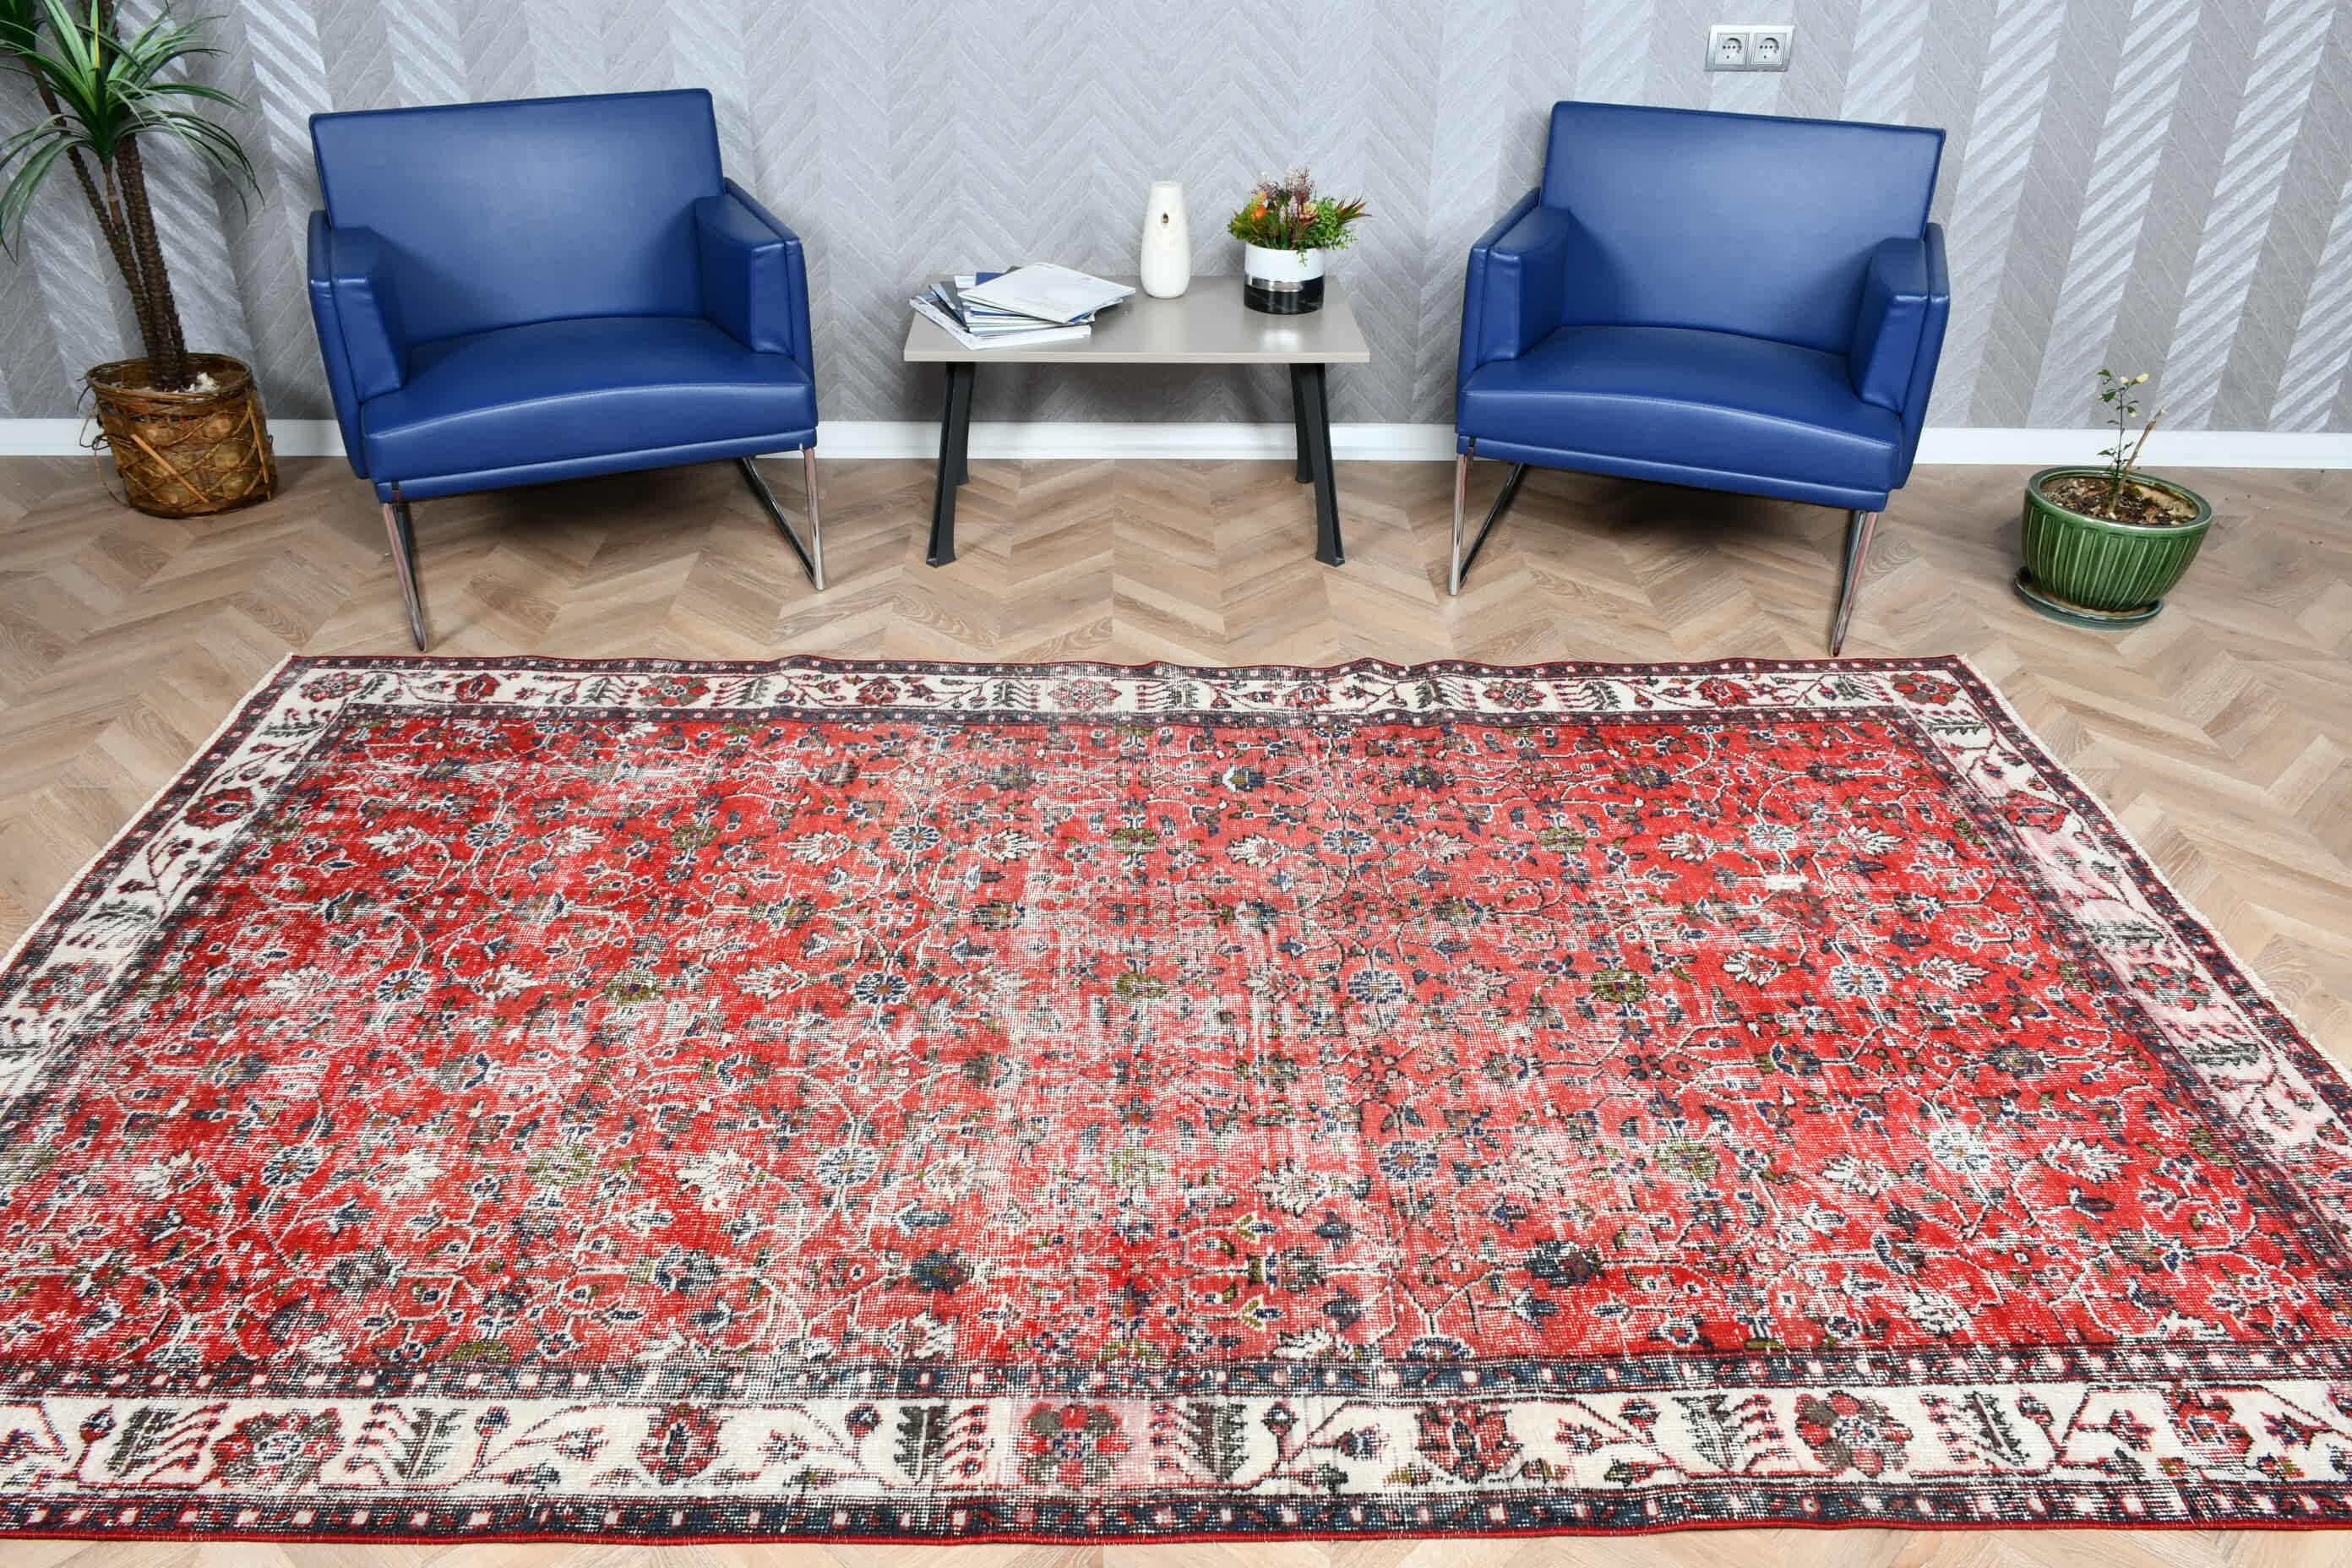 Red Wool Rug, Rugs for Living Room, Vintage Rug, 5.4x9.2 ft Large Rug, Salon Rug, Turkish Rugs, Wool Rug, Living Room Rug, Bedroom Rug